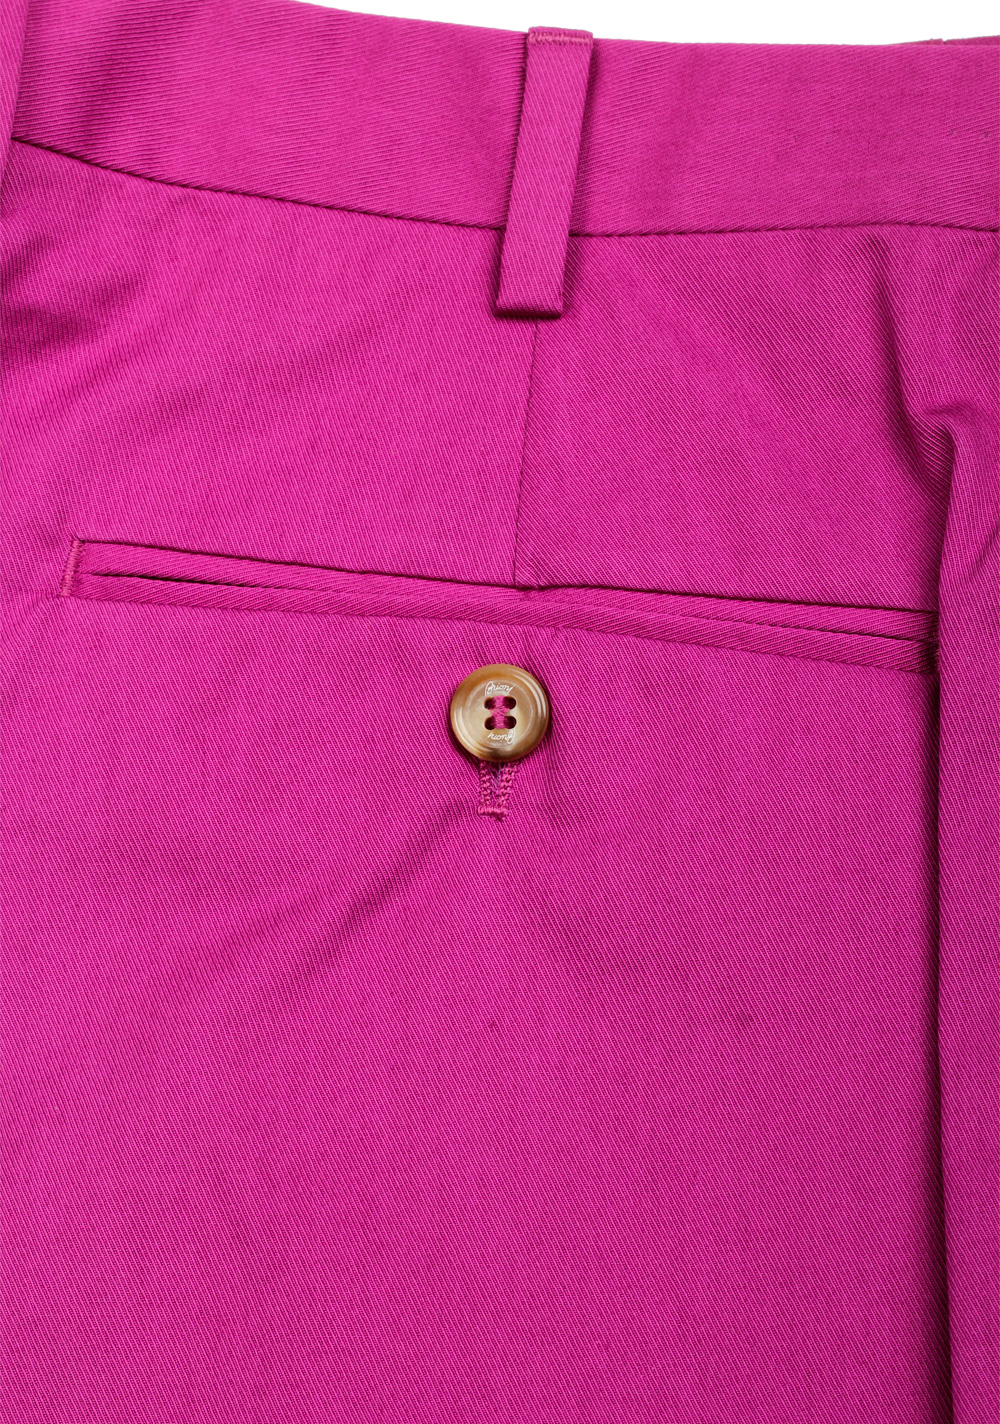 Brioni Pink Trousers Size 48 / 32 U.S. | Costume Limité